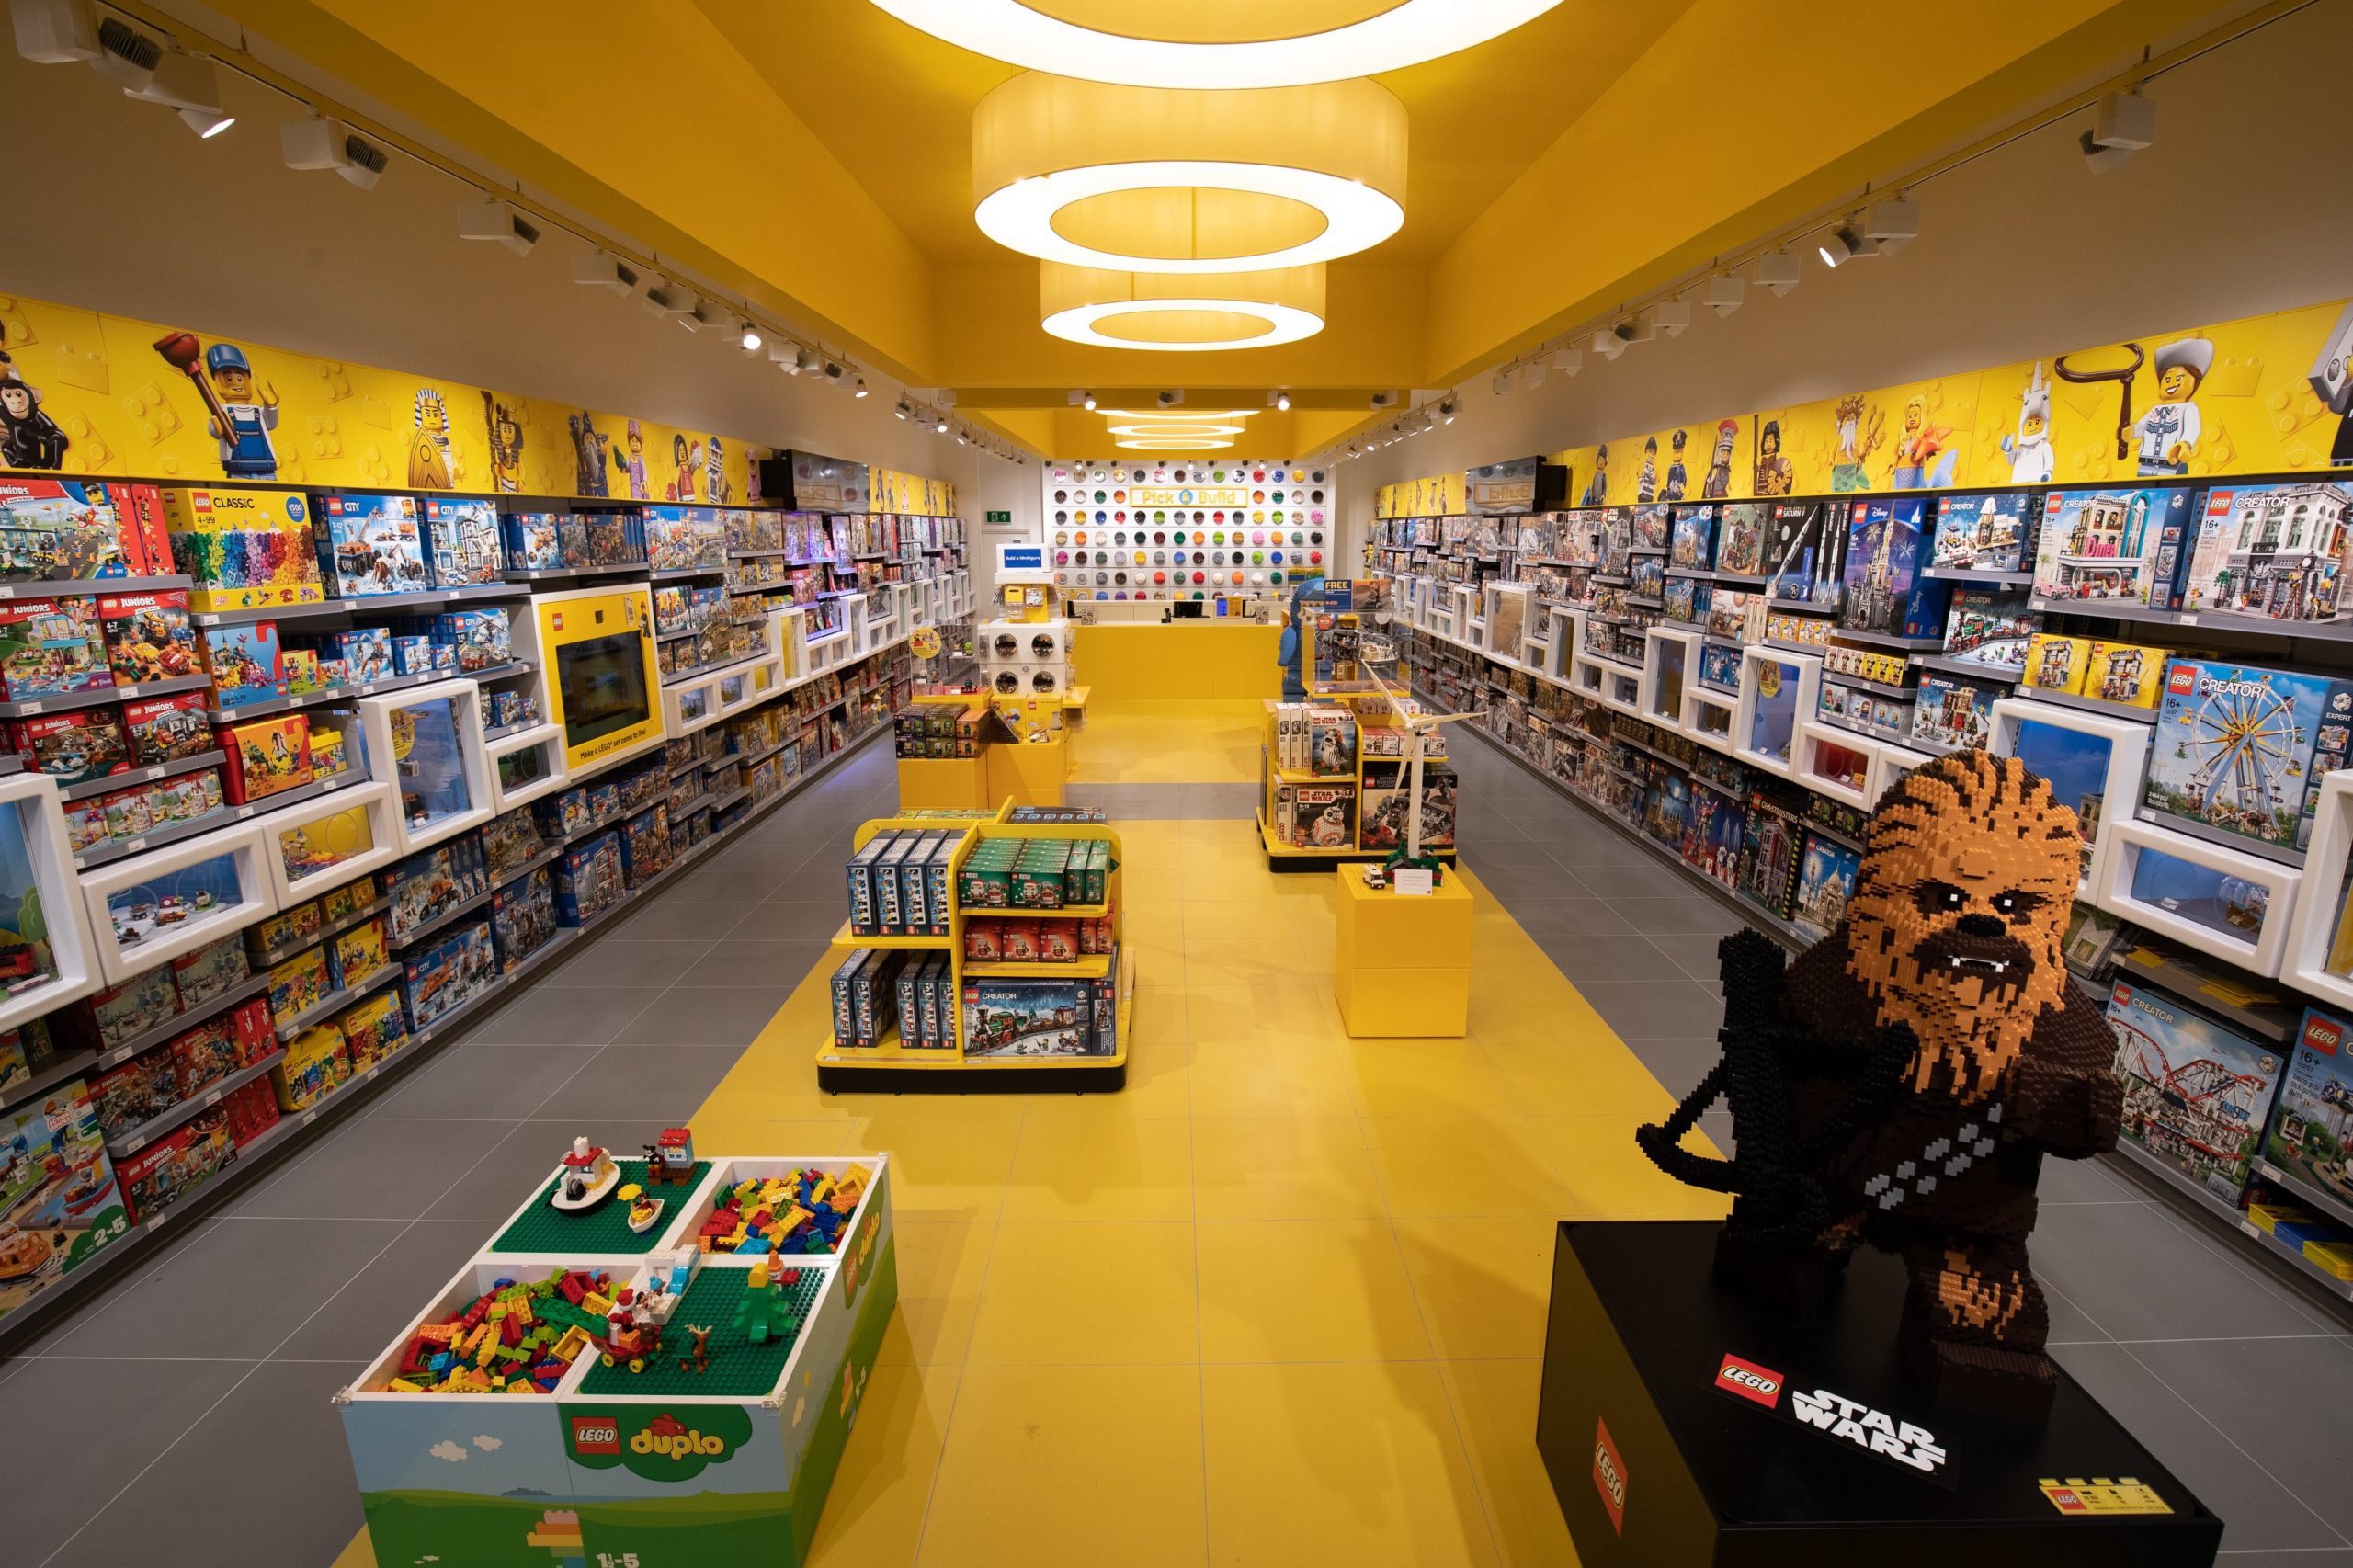 lego world store